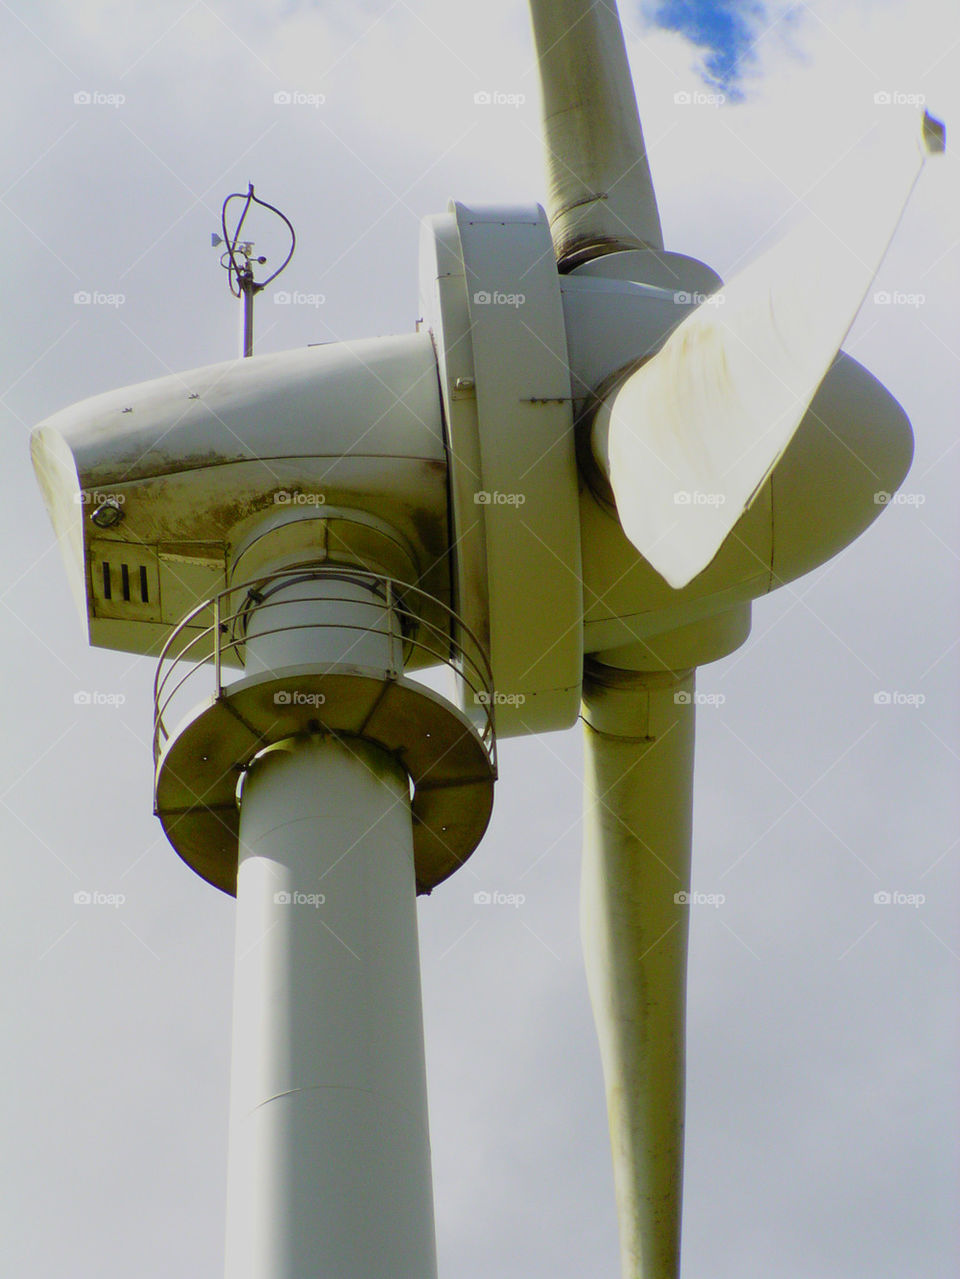 Wind turbine, Australia.